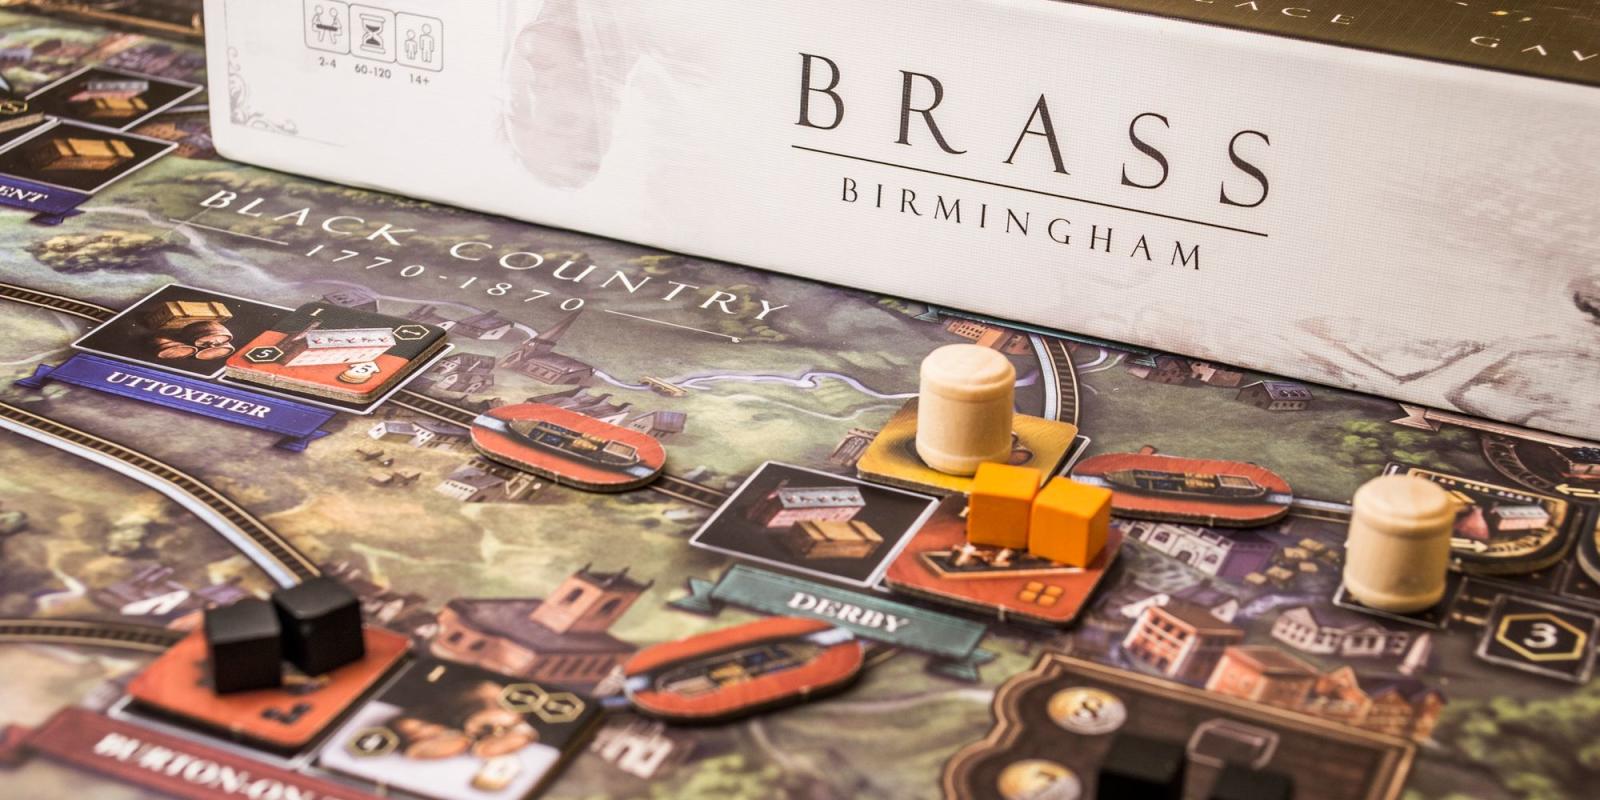 Brass: Birmingham avagy tematizált stratégia felsőfokon